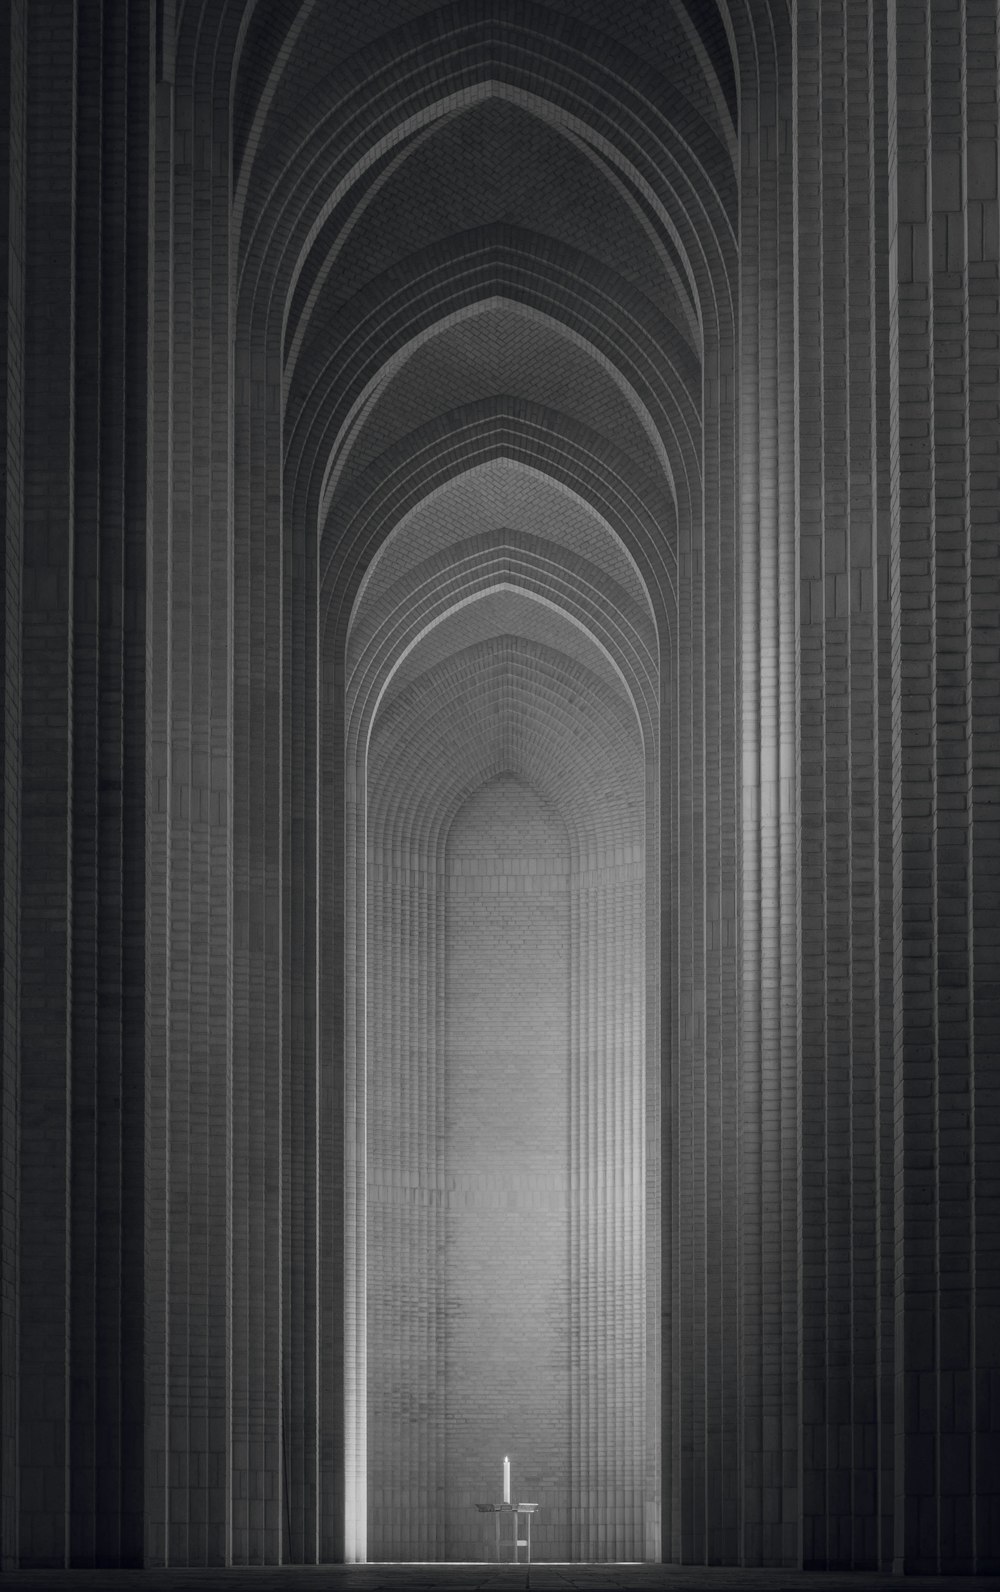 Une photo en noir et blanc d’un long couloir